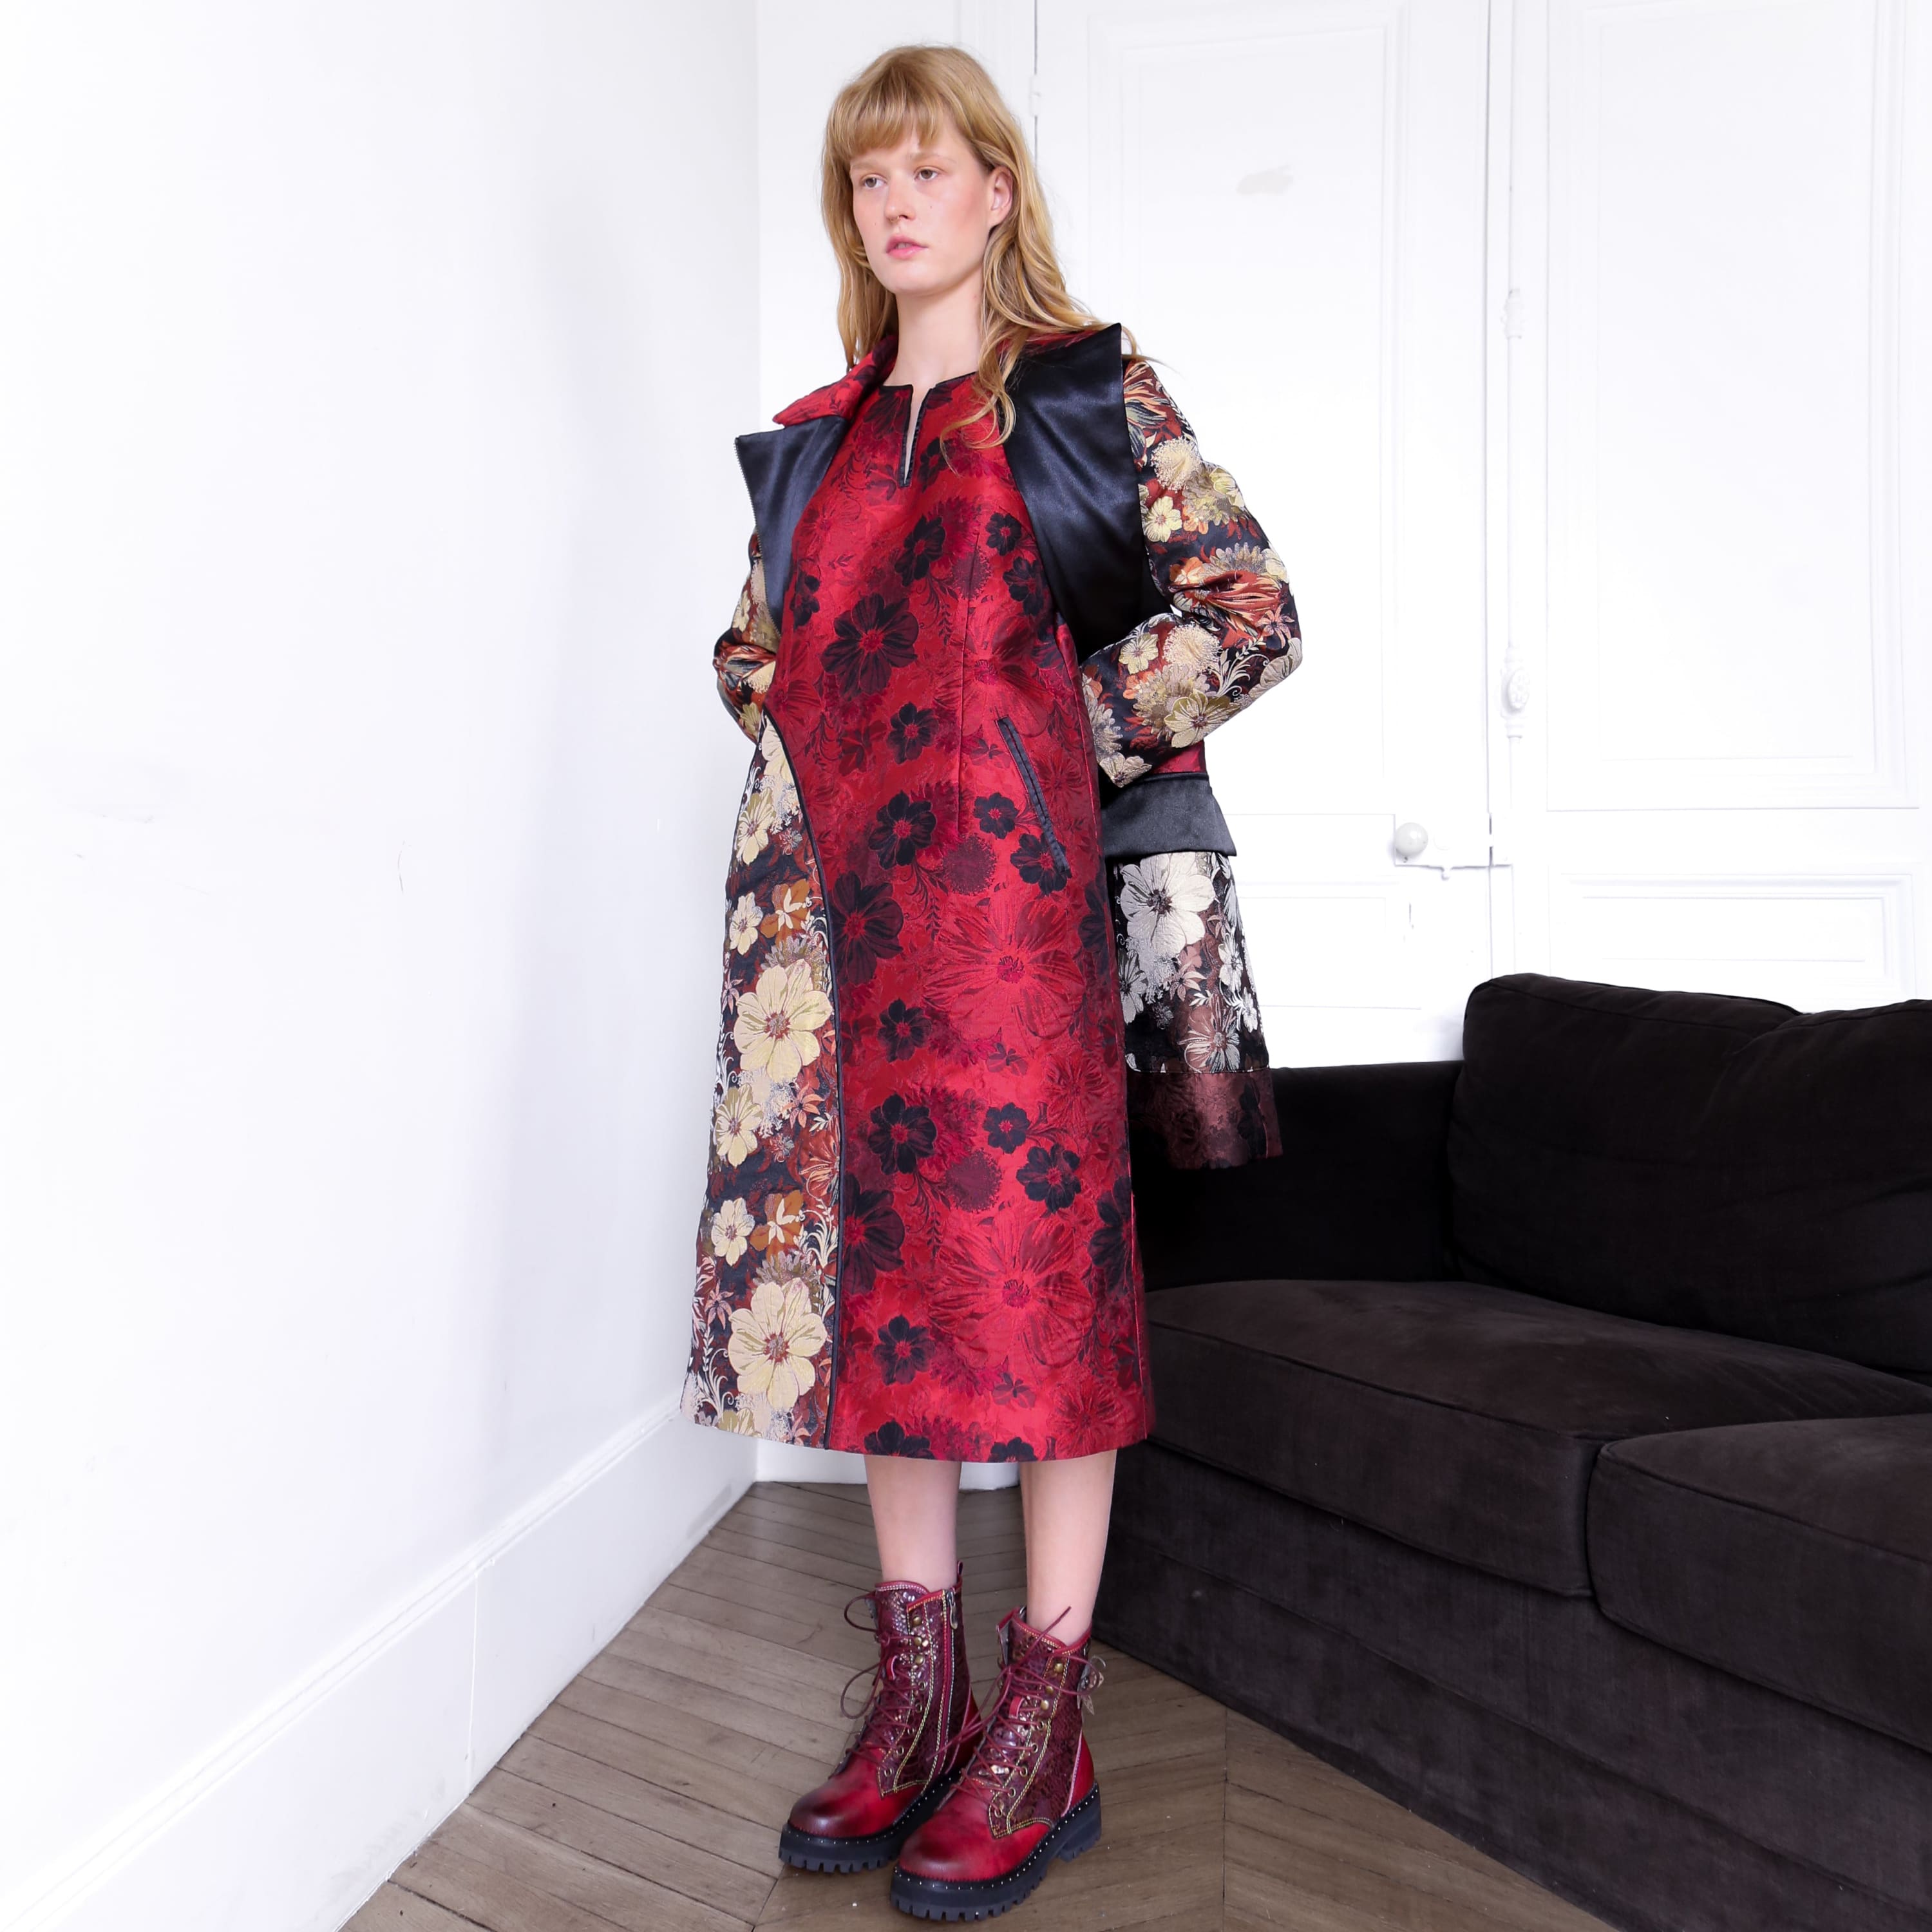 Ouranos rød patchwork kjole Studio - Kjoler